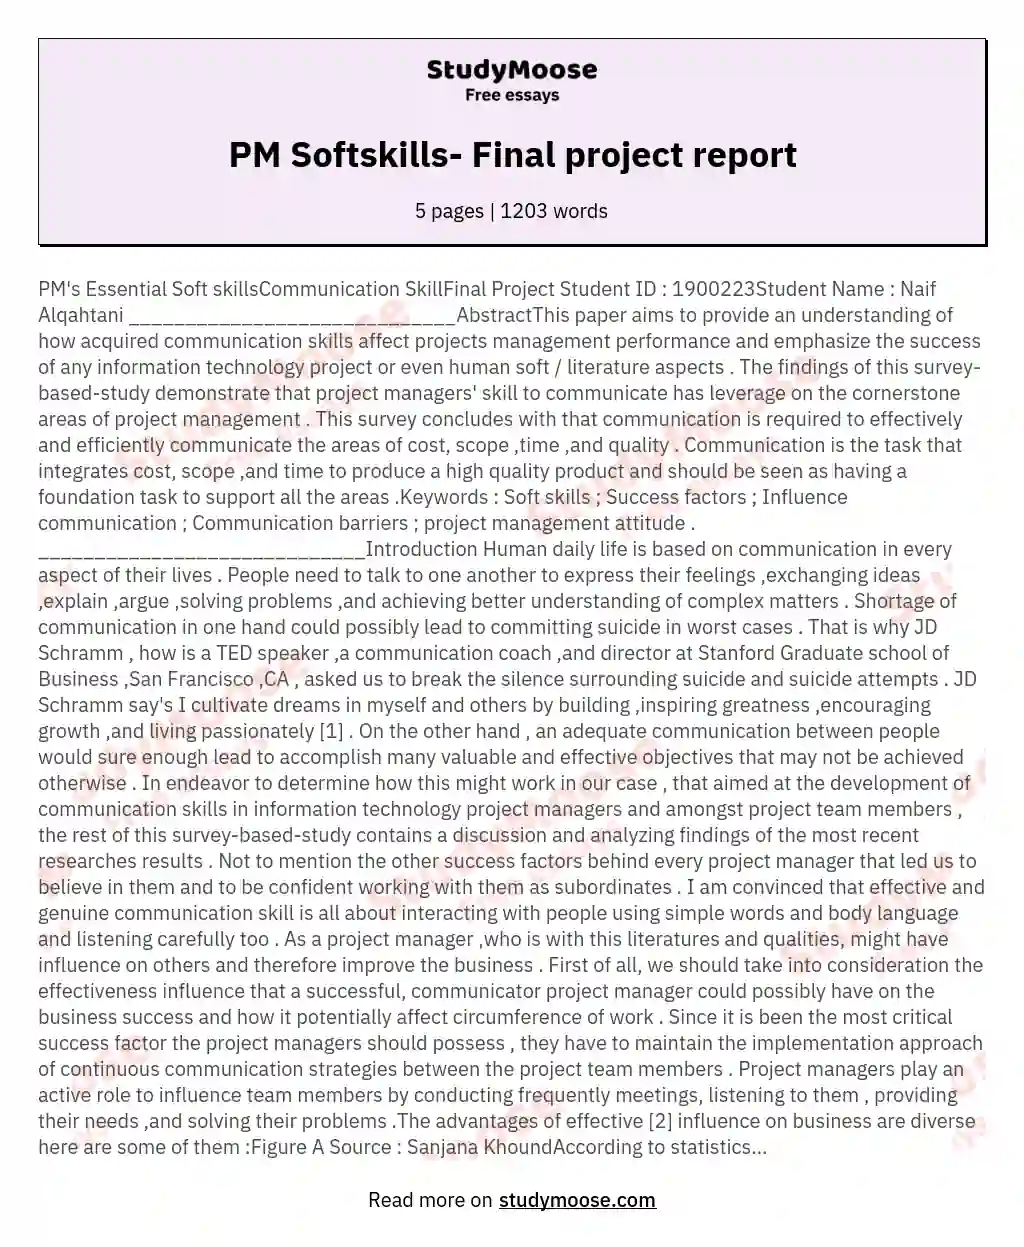 PM Softskills- Final project report essay